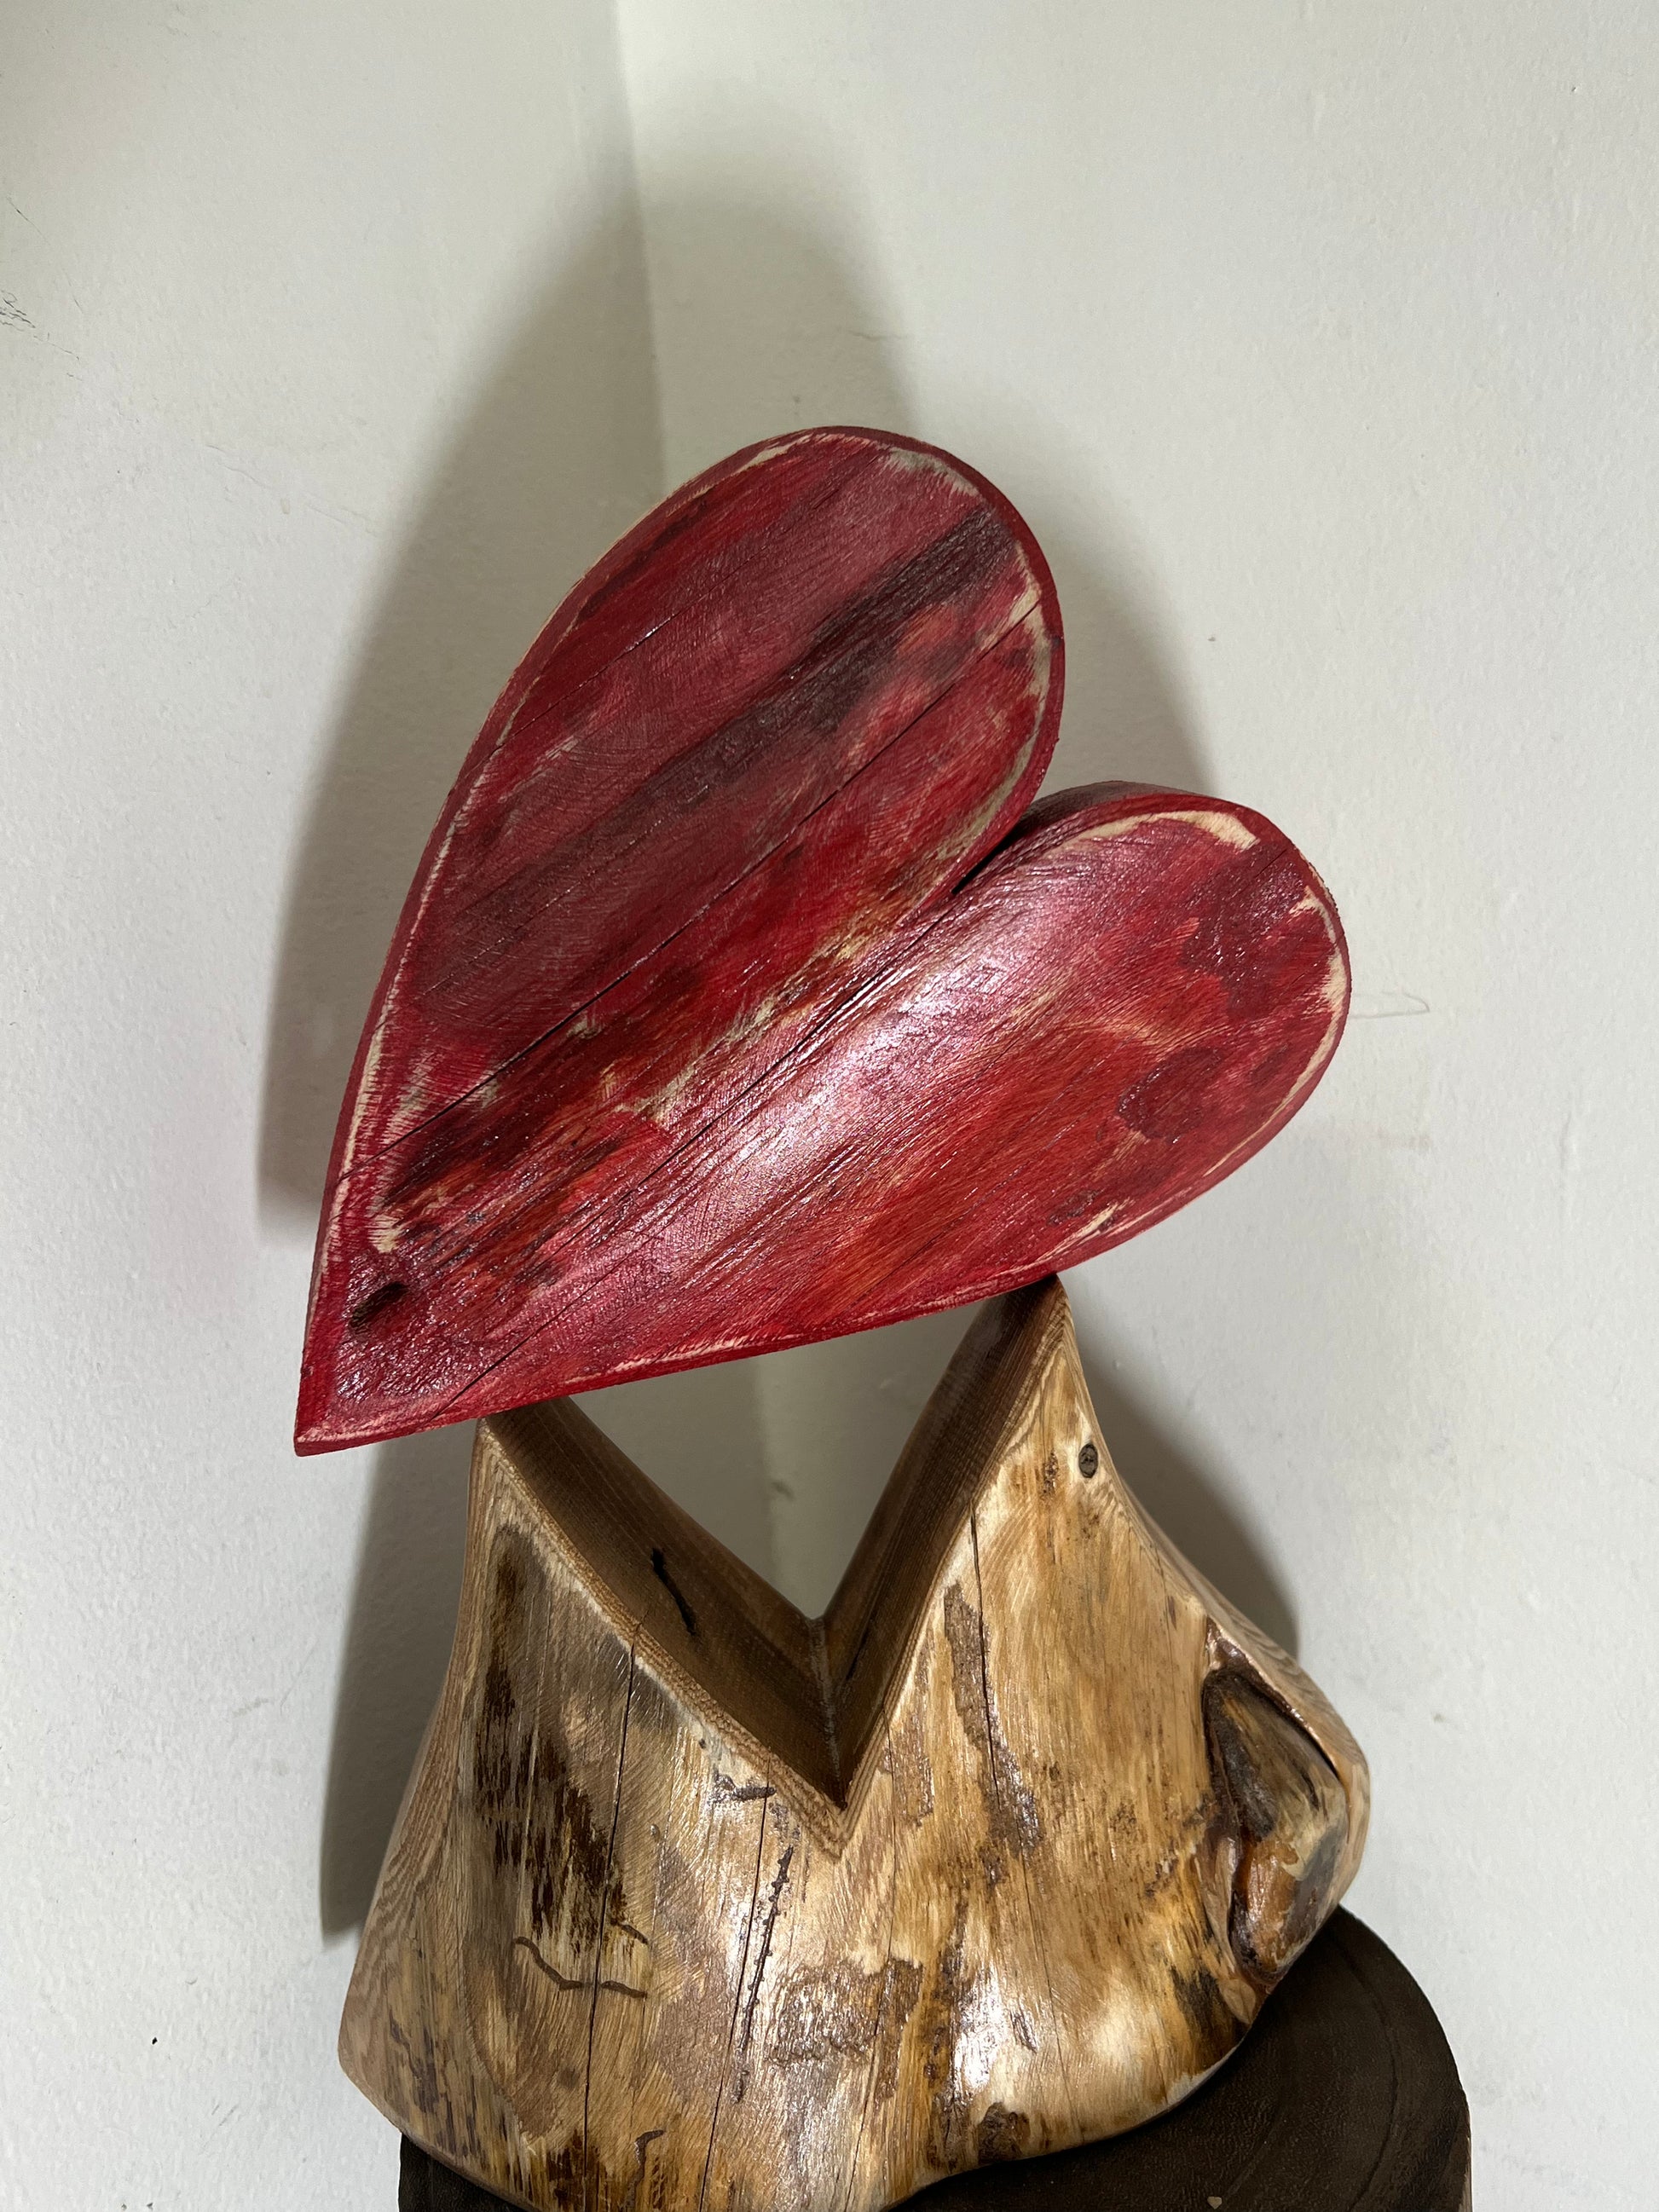 Coeur fait de bois recyclé Fait main à Trois-Rivières Bertrand Massé Artiste